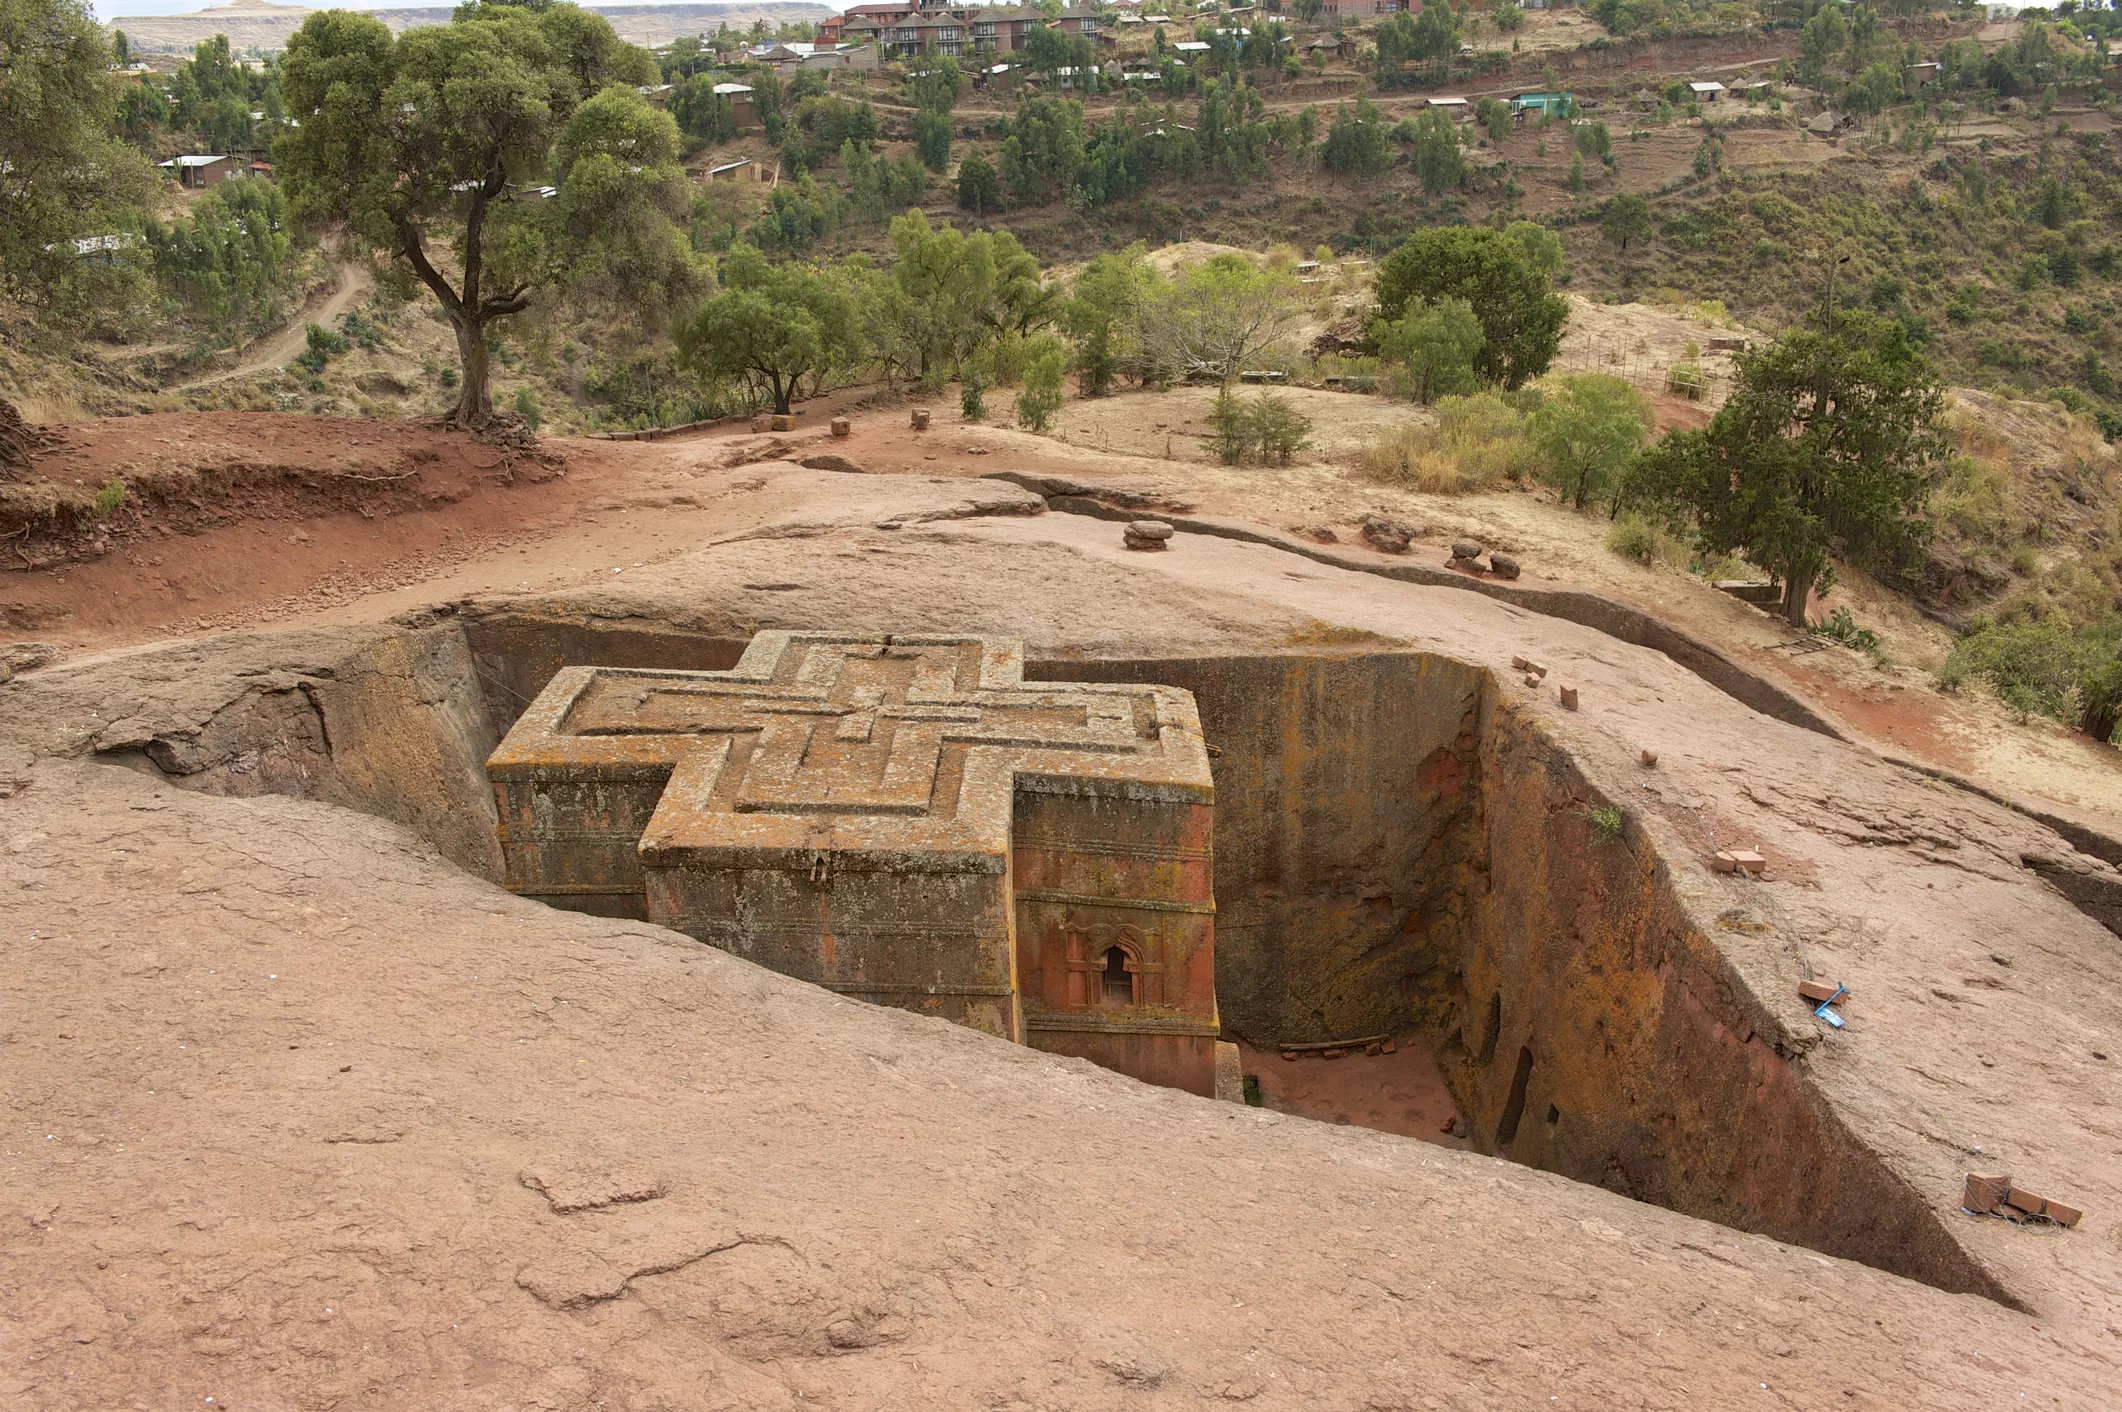 Després d’Axum, Roha fou la capital etíopa i el lloc on l’emperador Lalibela va fer excavar a la roca els 11 temples que componen la 'Jerusalem africana'